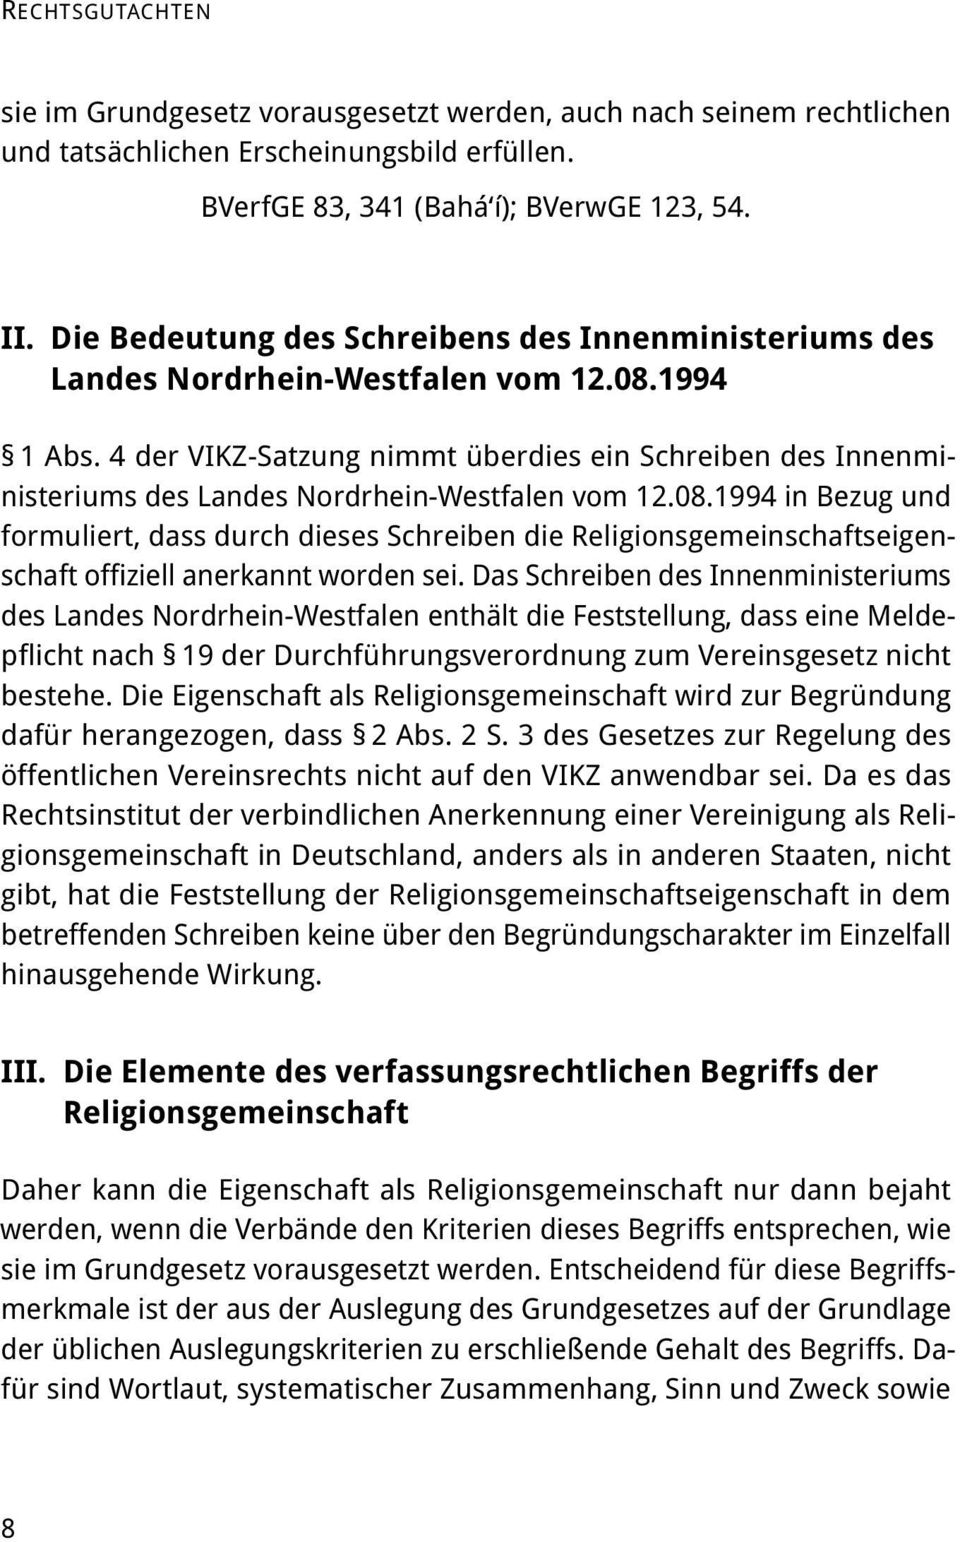 4 der VIKZ-Satzung nimmt überdies ein Schreiben des Innenministeriums des Landes Nordrhein-Westfalen vom 12.08.